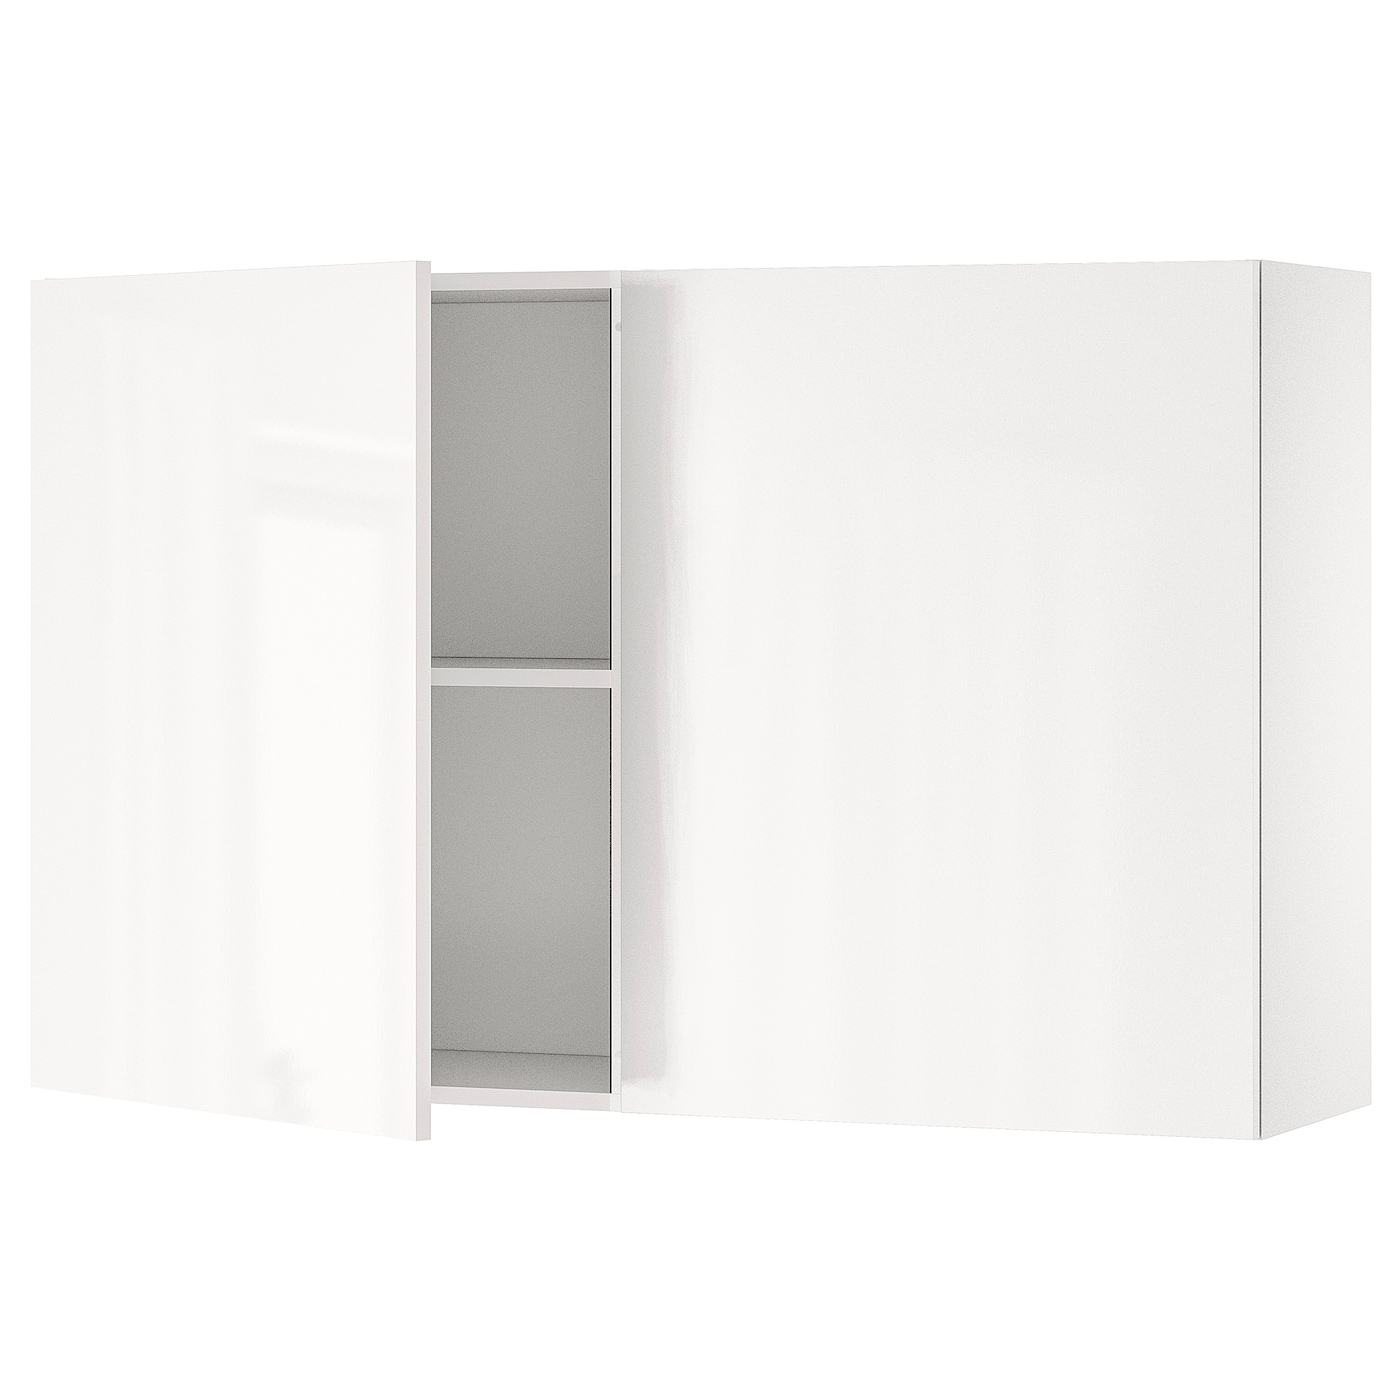 Кухонный настенный шкаф - IKEA KNOXHULT/КНОКСХУЛЬТ ИКЕА, 120x75 см, белый